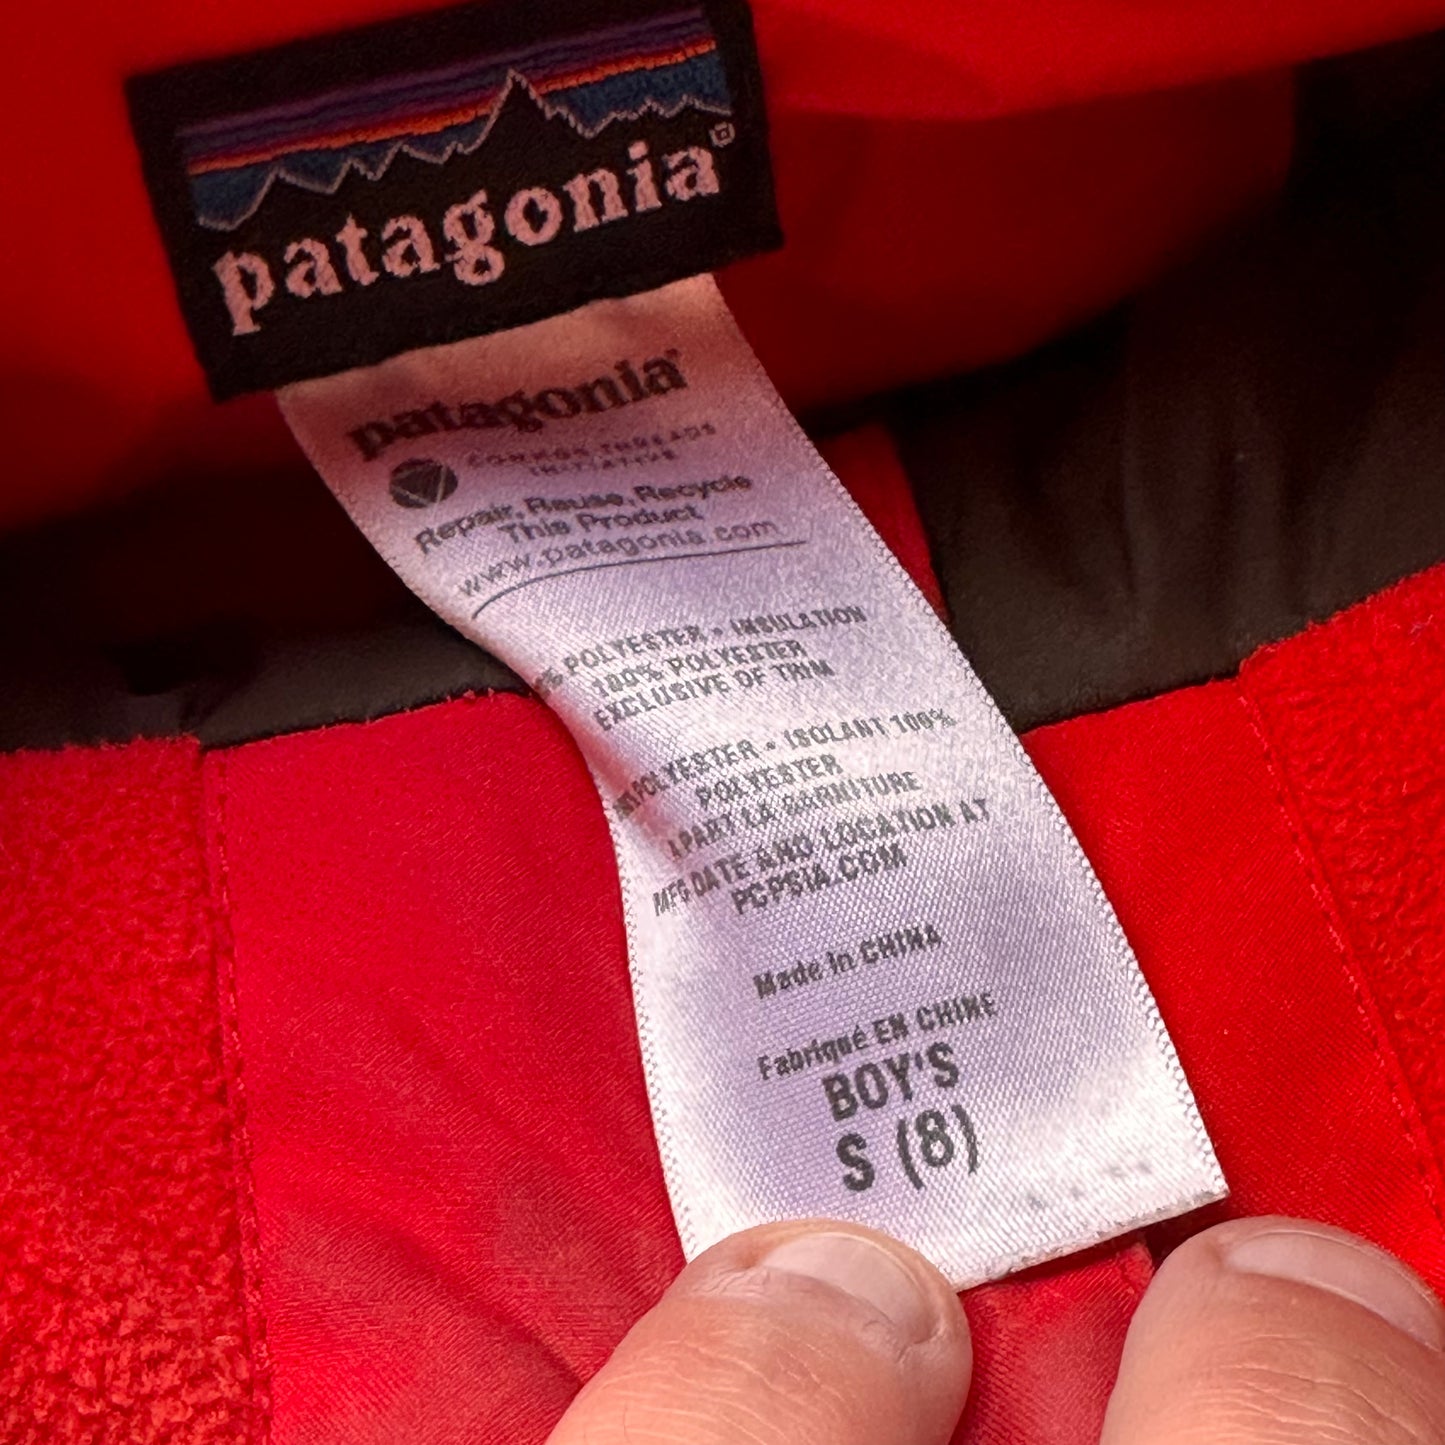 Patagonia kids jackets